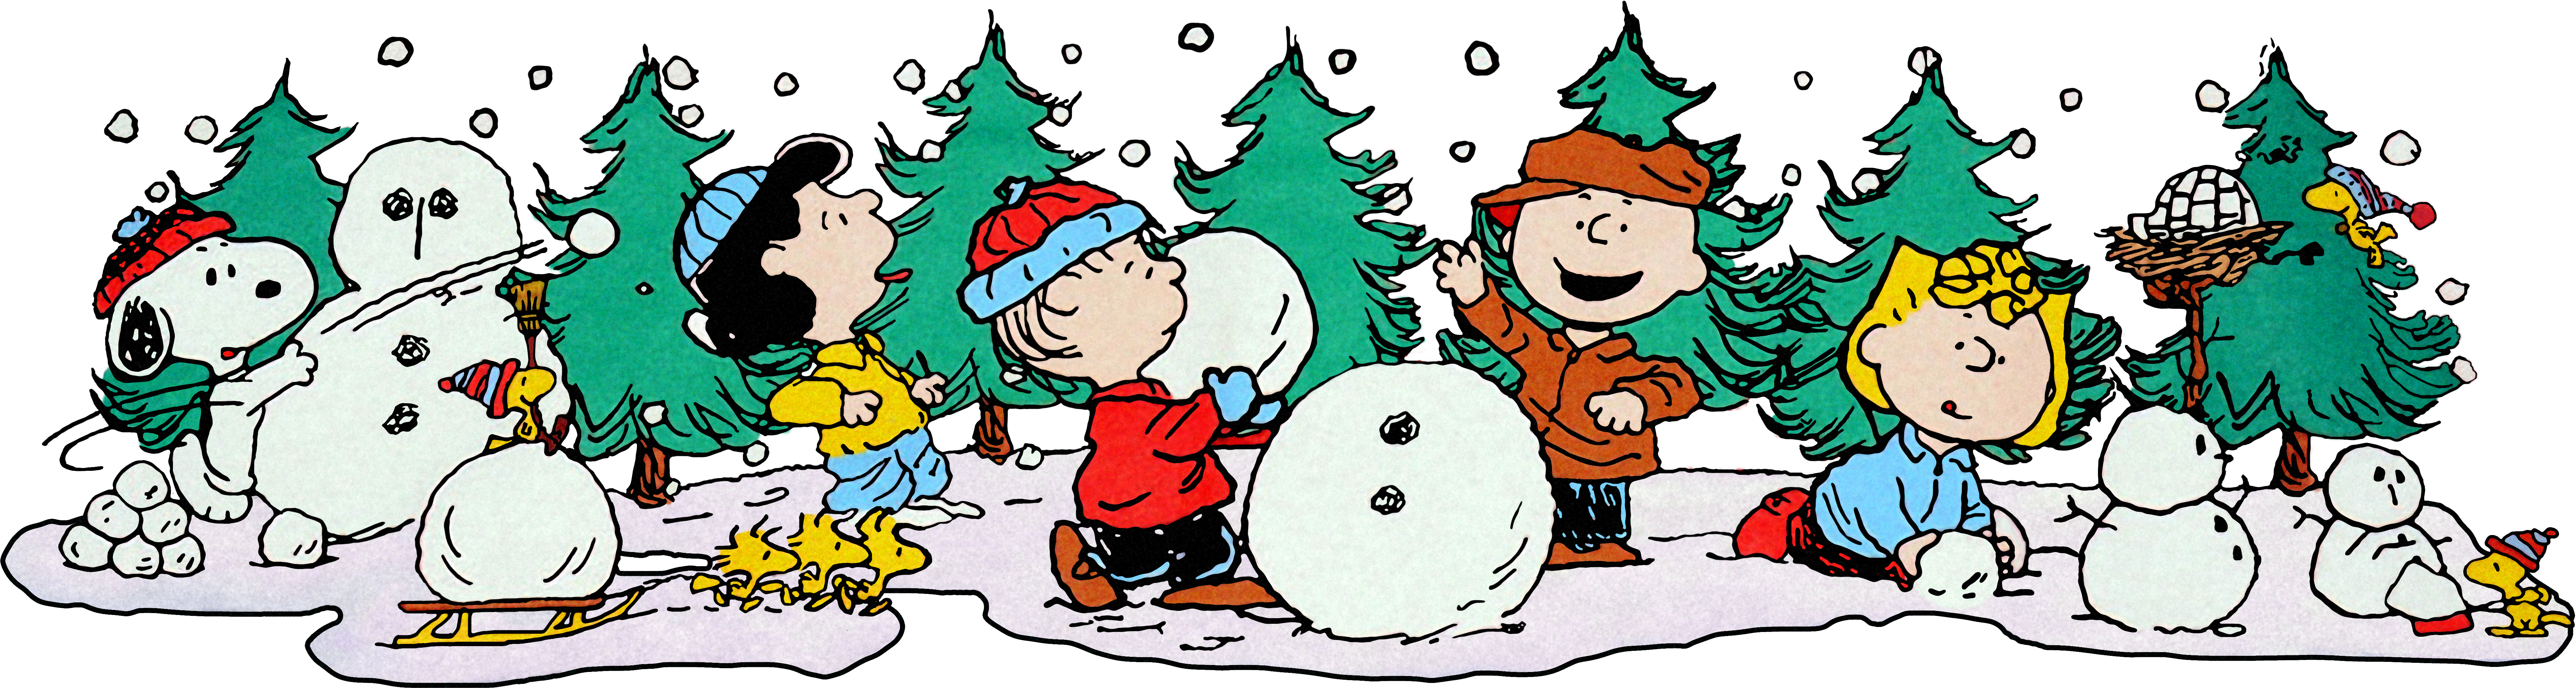 Peanuts Gang Winter Fun.png PNG image